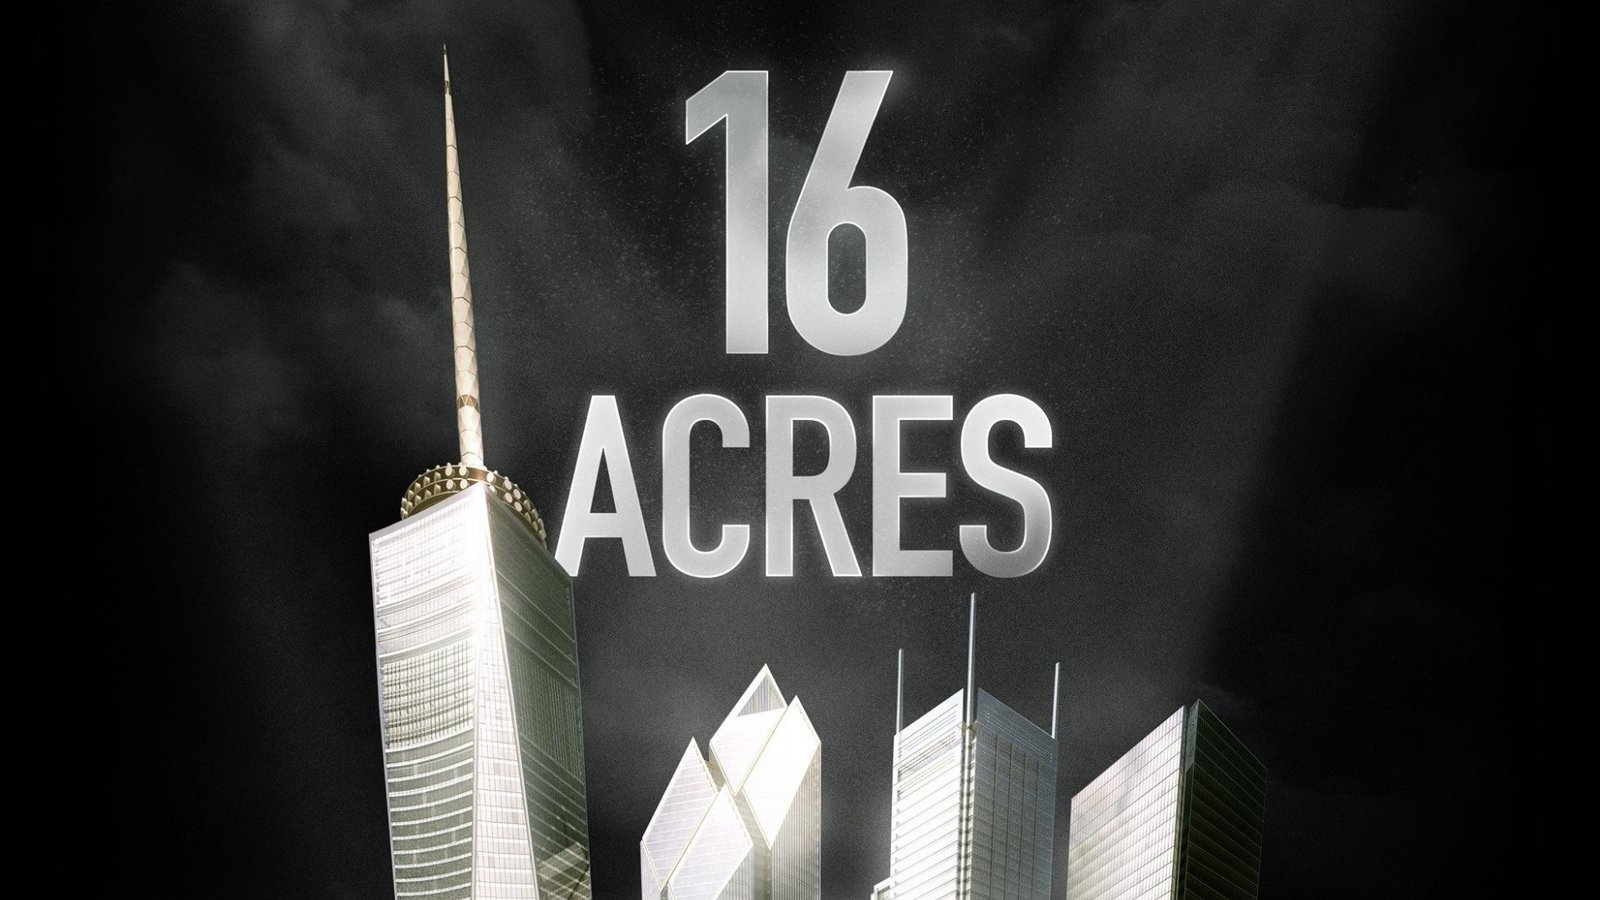 16 Acres - The Rebuilding of Ground Zero